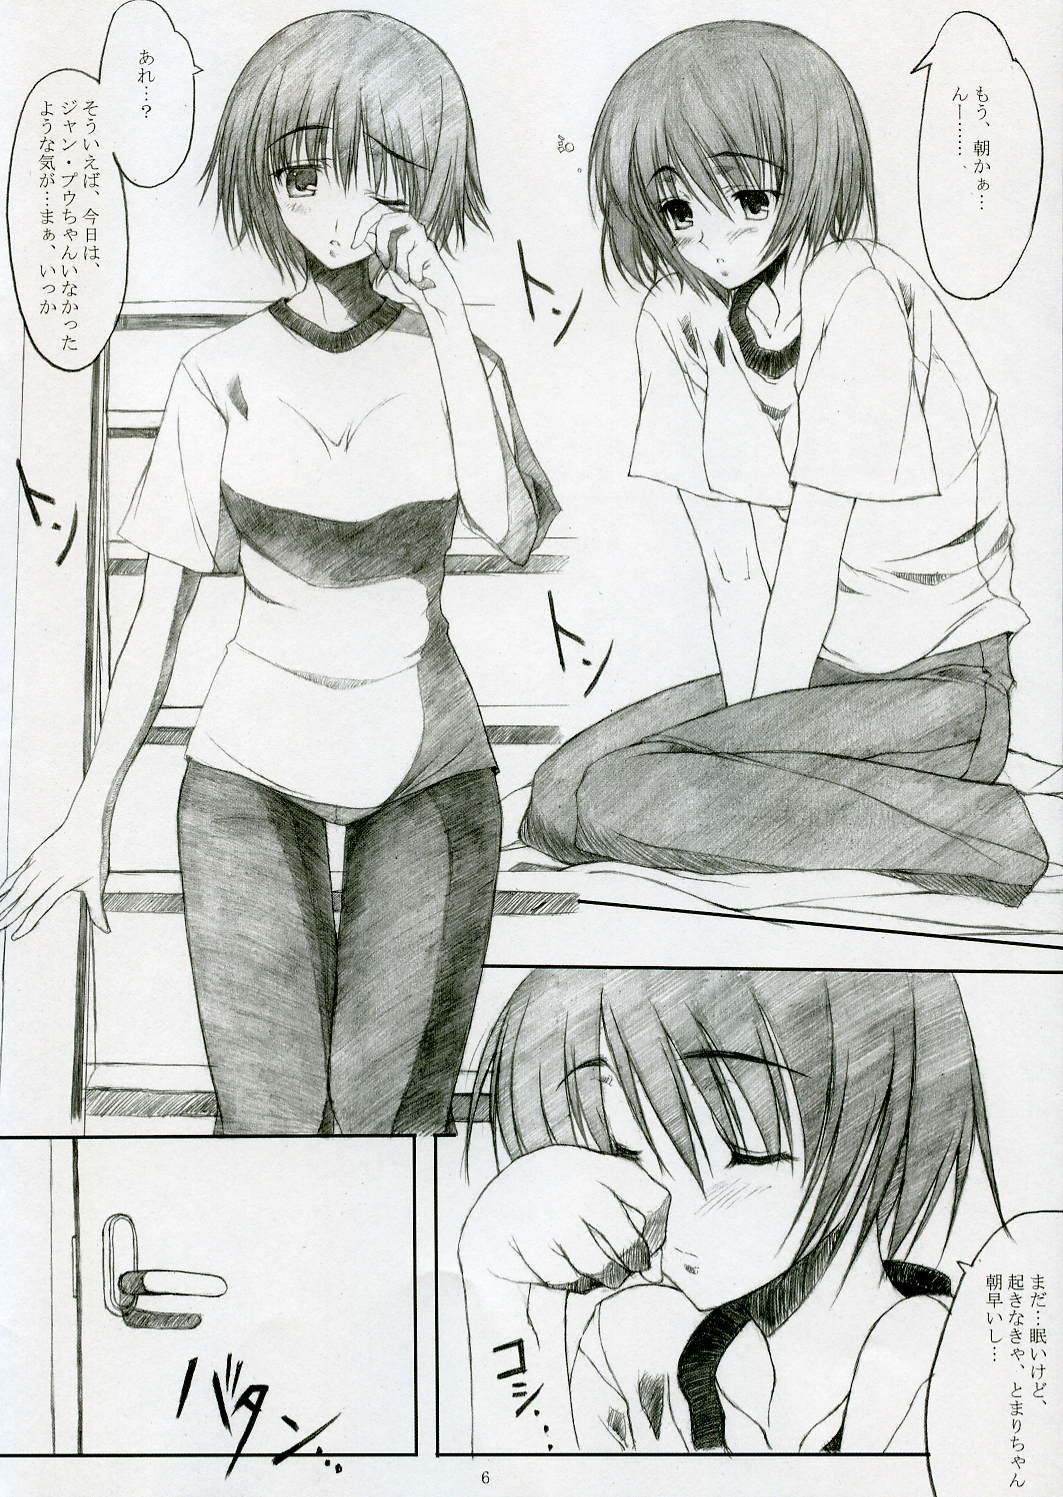 (SC32)[Mugen no Chikara (Murakami Yuuki)] ~Kashimashi Nikki~ Tomari Chan no Baai Sono 1 (KASHIMASHI ~girl meets girl~) page 5 full